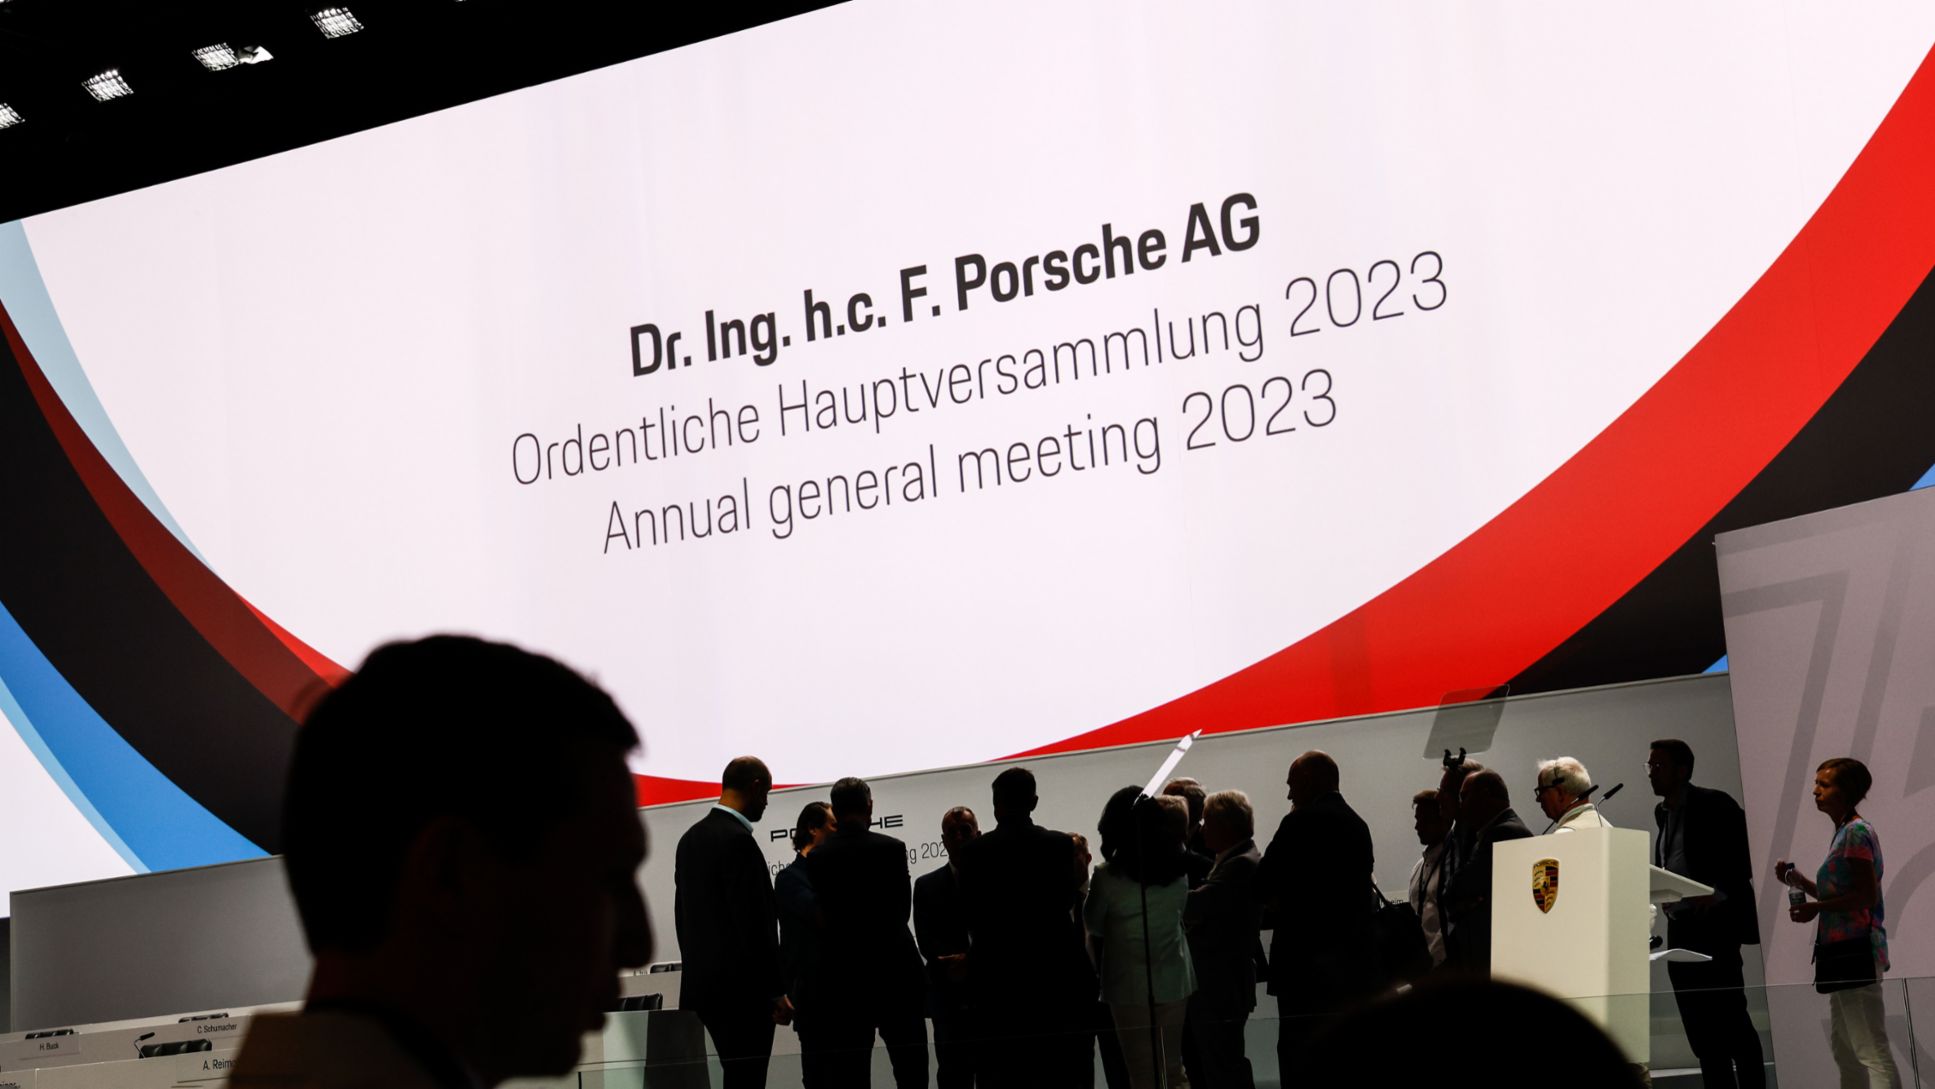 Ordentliche Hauptversammlung, 2023, Porsche AG